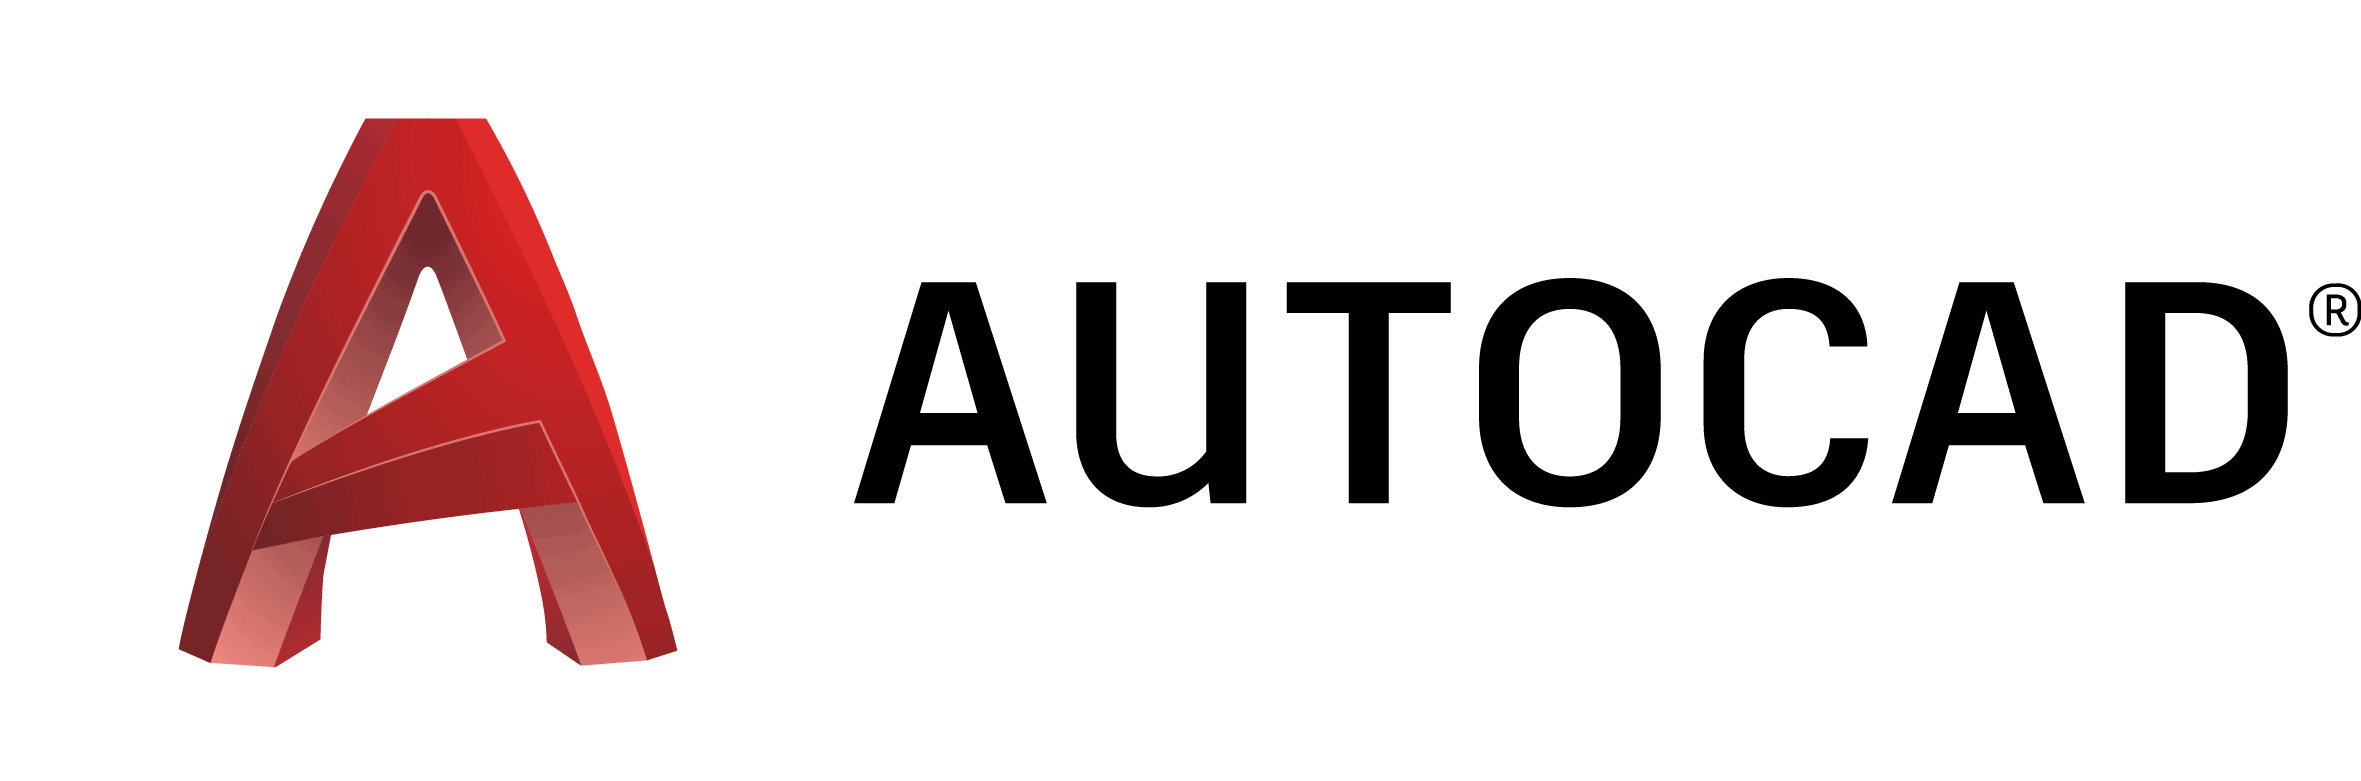 best-of-3d-modeling-software-autocad-logo